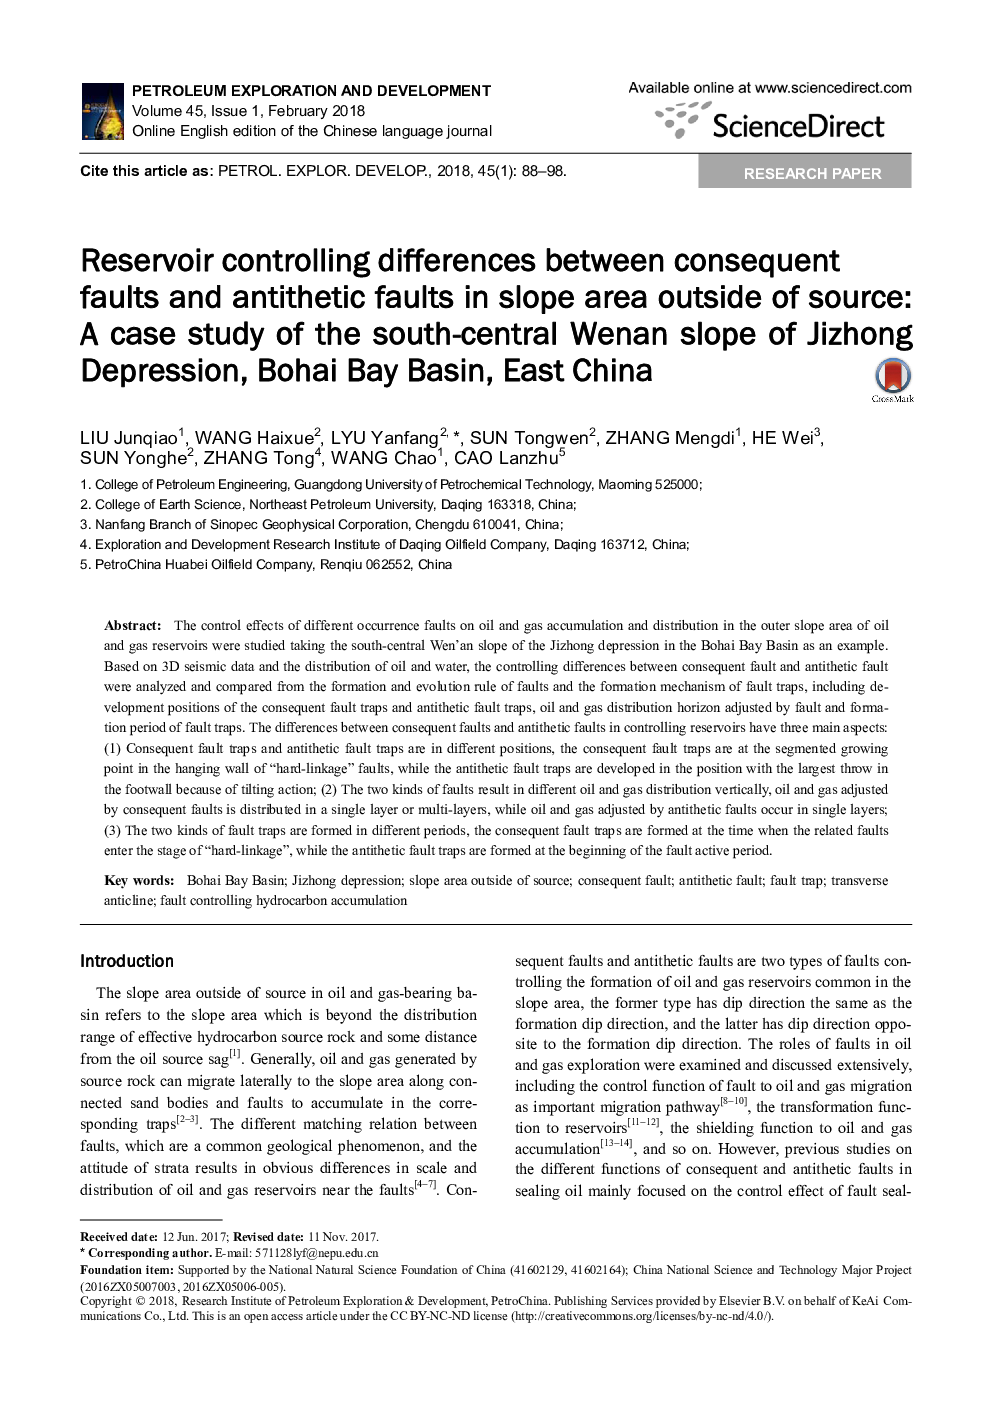 مخزن کنترل اختلاف بین گسل های ناشی از آن و گسل های انتشاری در ناحیه شیب خارج از منبع: مطالعه موردی شیب جنوب و مرکزی ونن افسردگی جی زونگ، حوضه خلیج بوخای، شرق چین